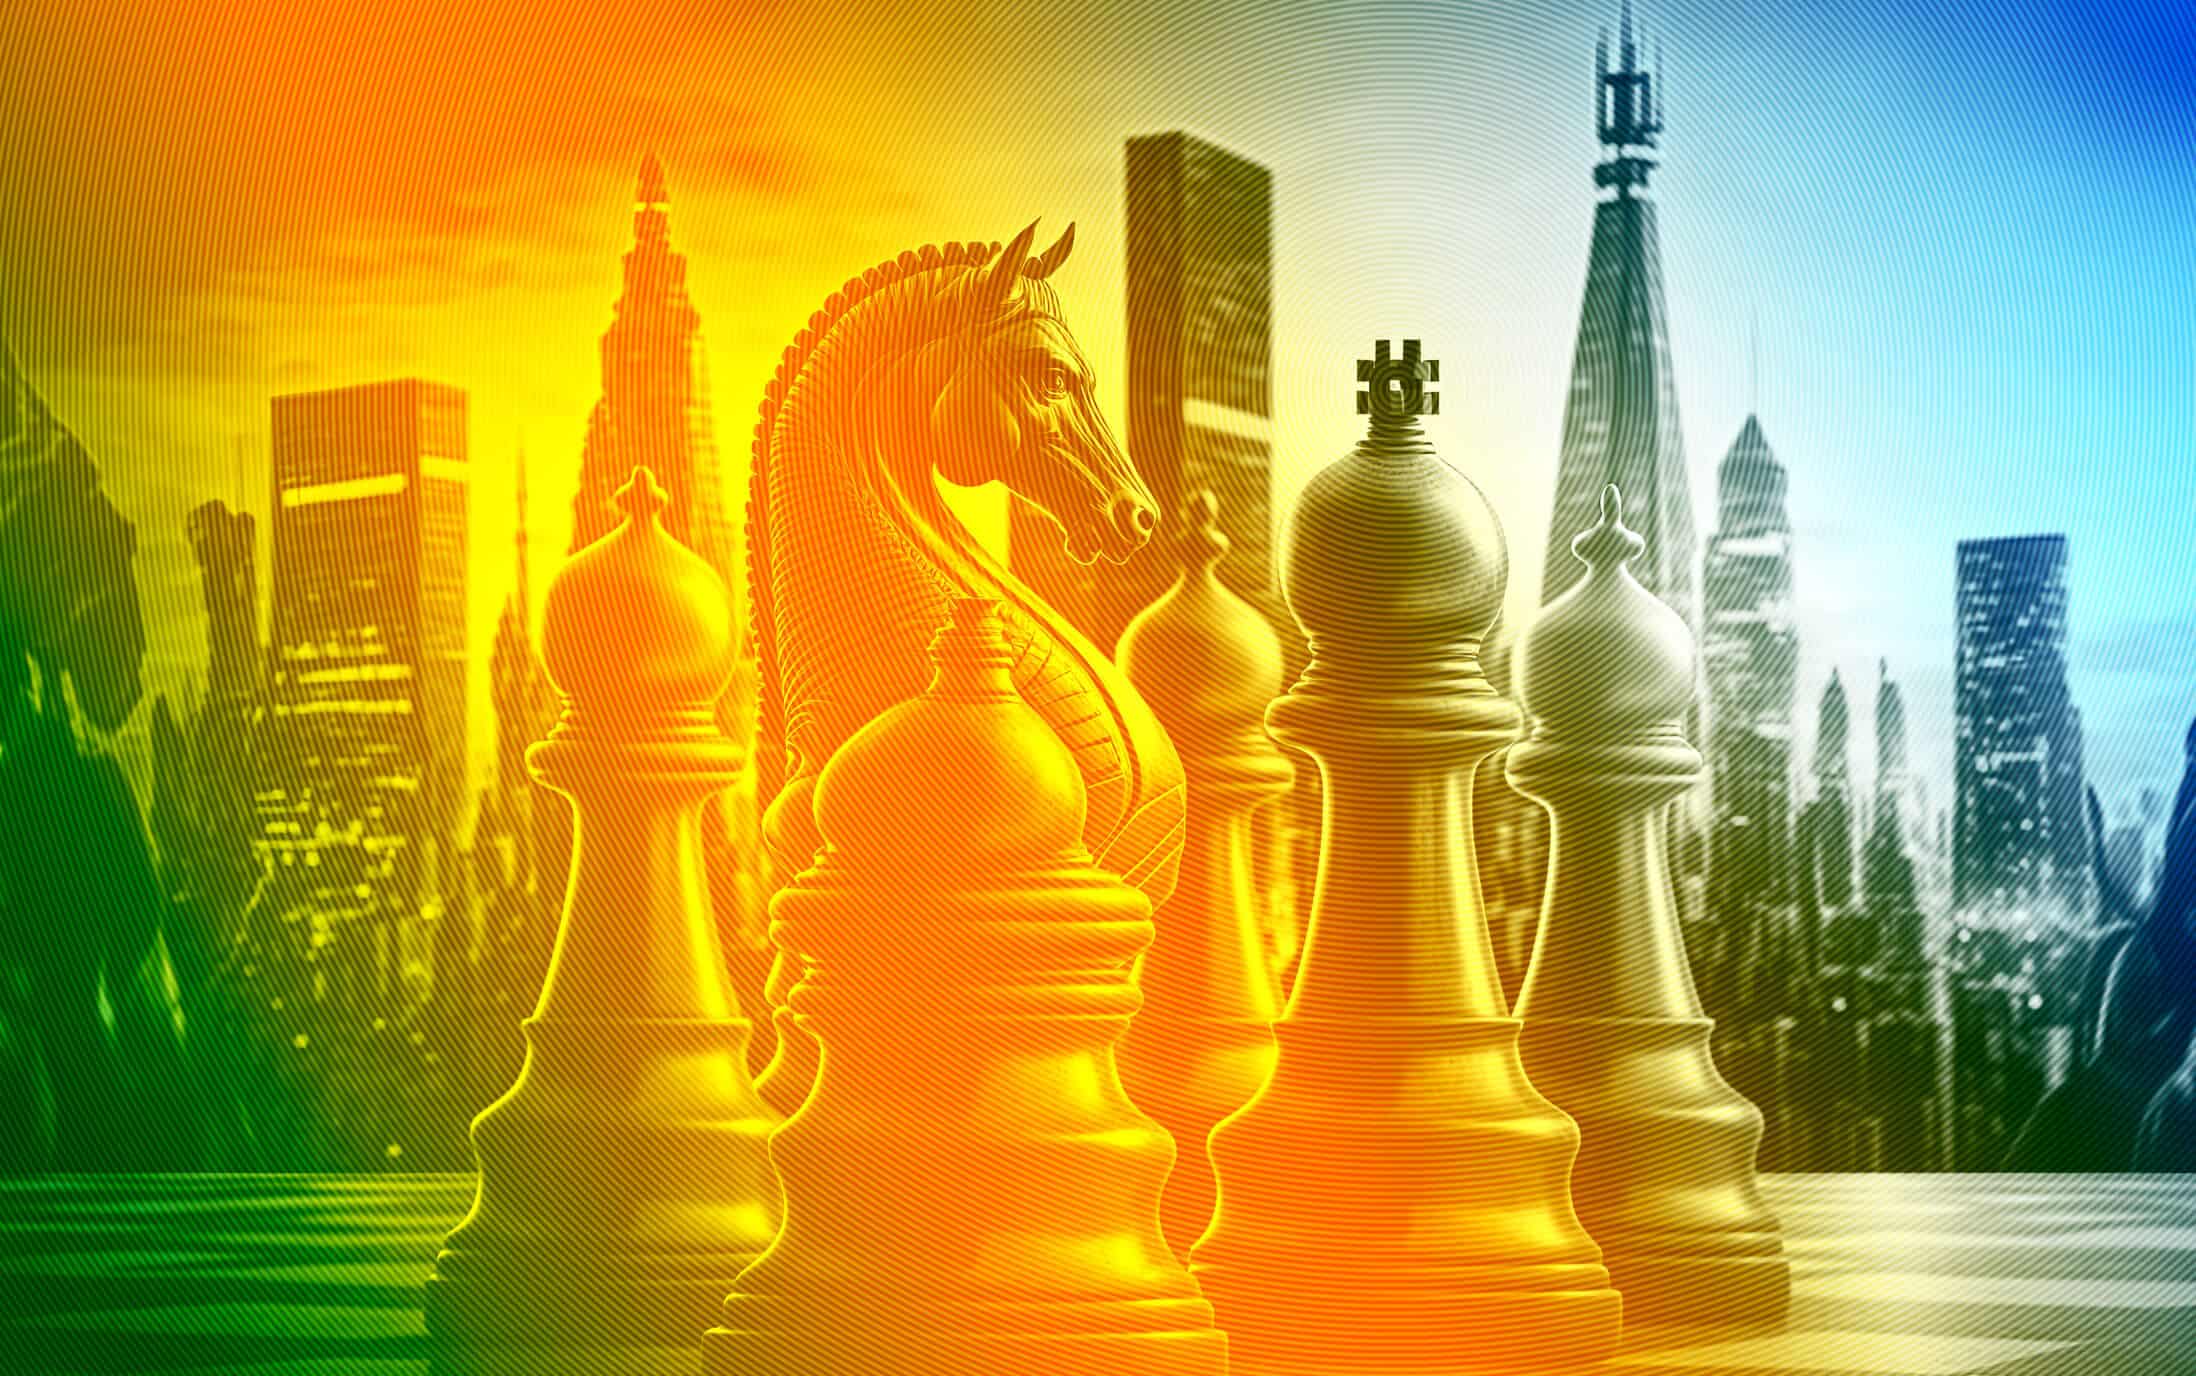 Stilisierte Schachfiguren. Skyline im Hintergrund